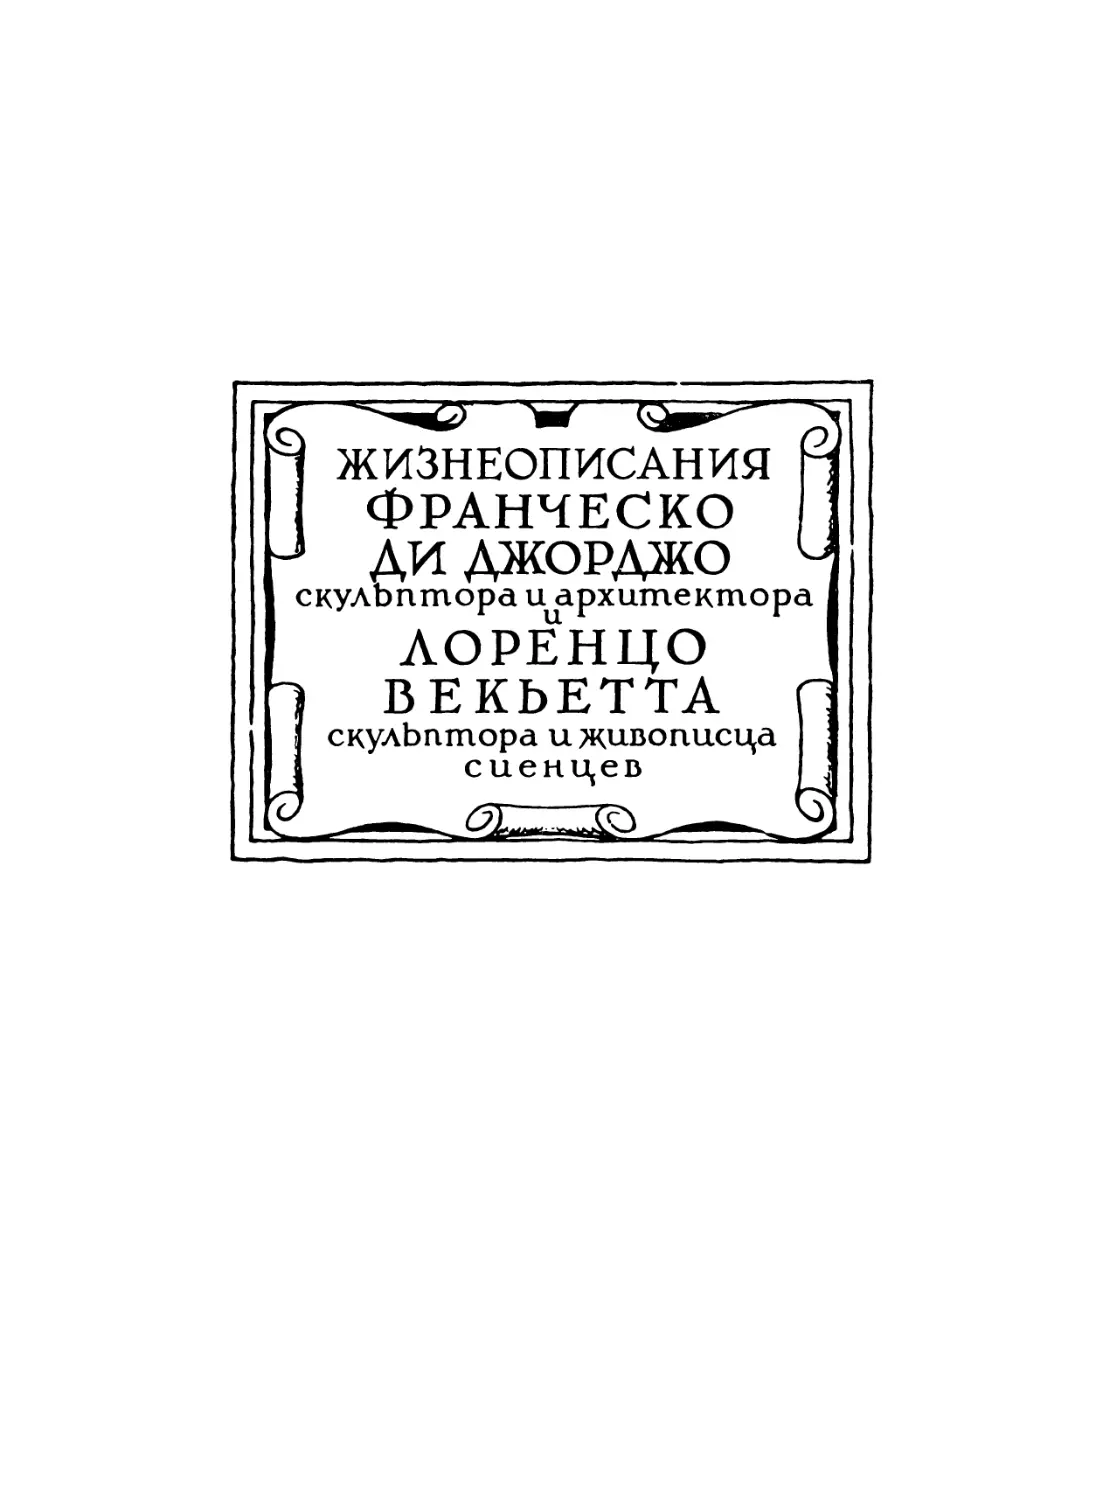 Жизнеописания Франческо ди Джорджо, скульптора и архитектора, и Лоренцо Векьетта, скульптора и живописца, сиенцев